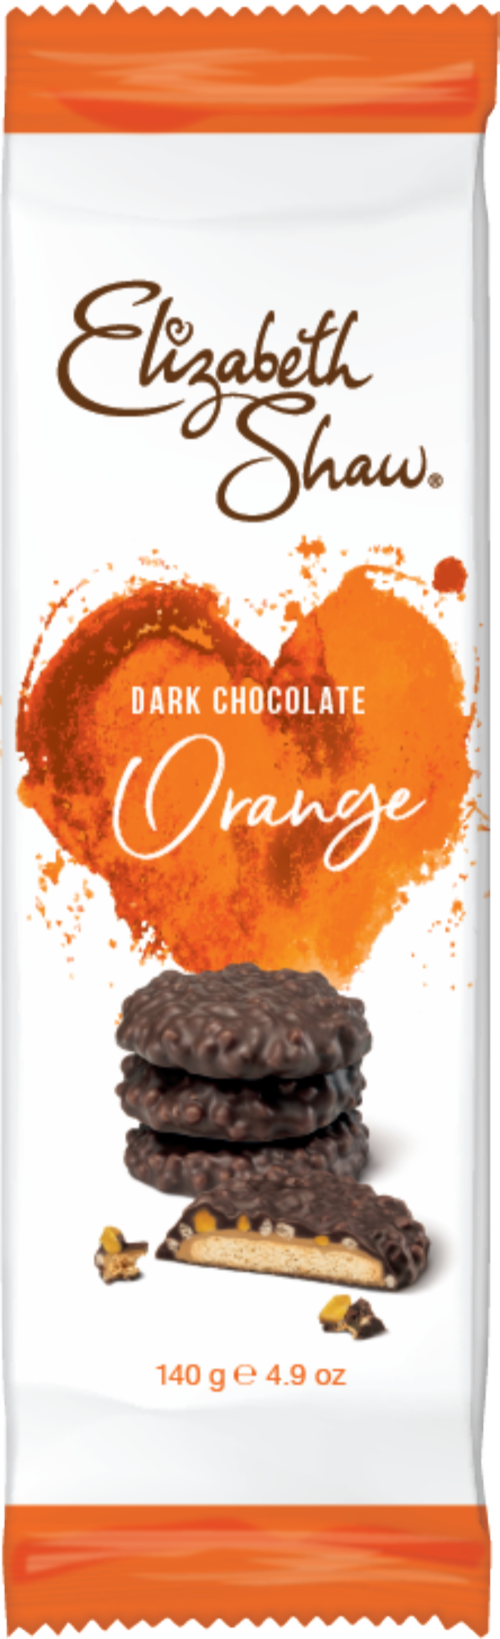 ELIZABETH SHAW Dark Chocolate Orange Biscuits 140g